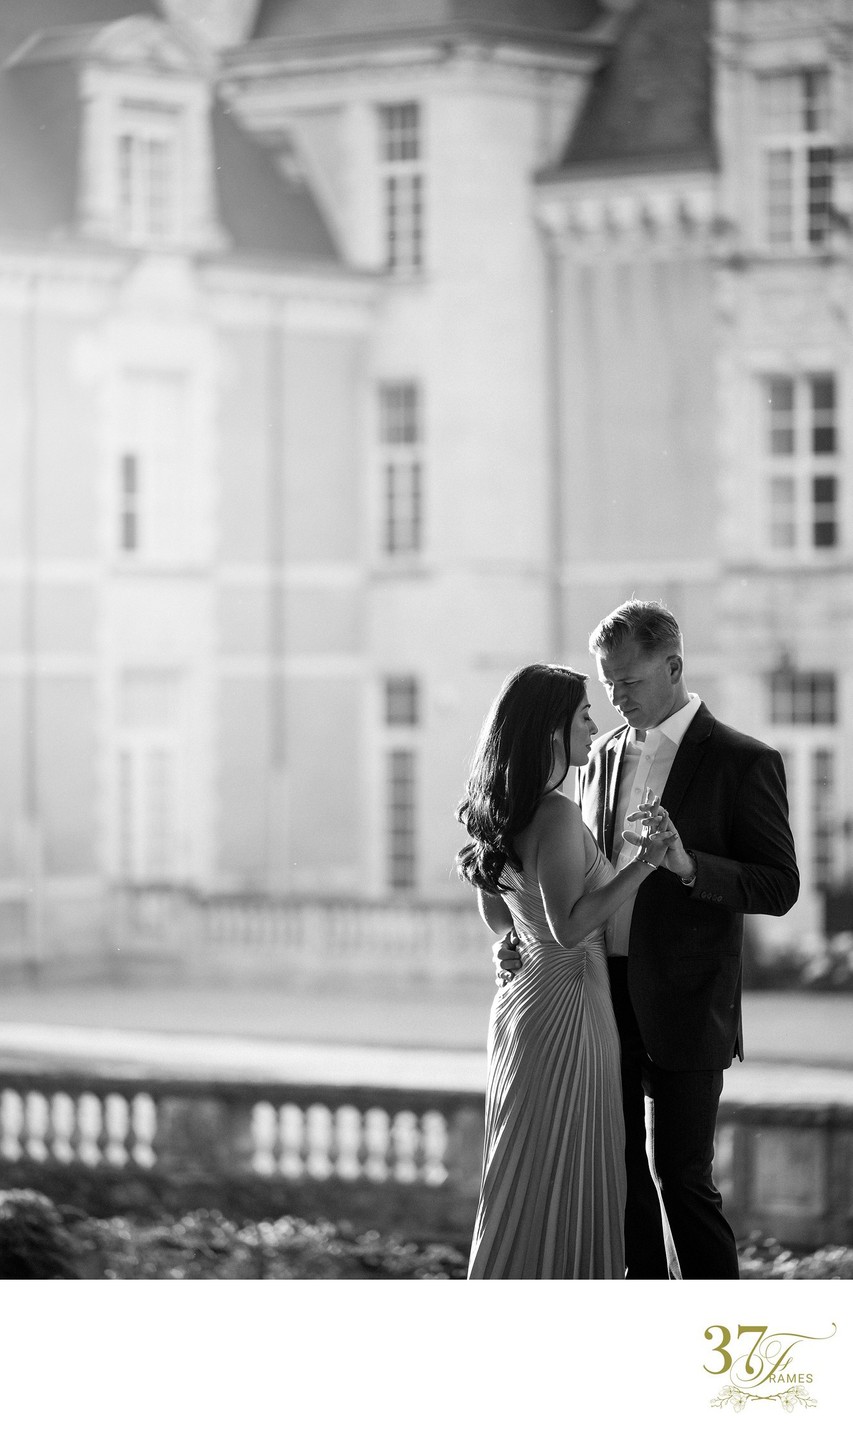 Engagement Photography Shoot at Château de Jalesnes